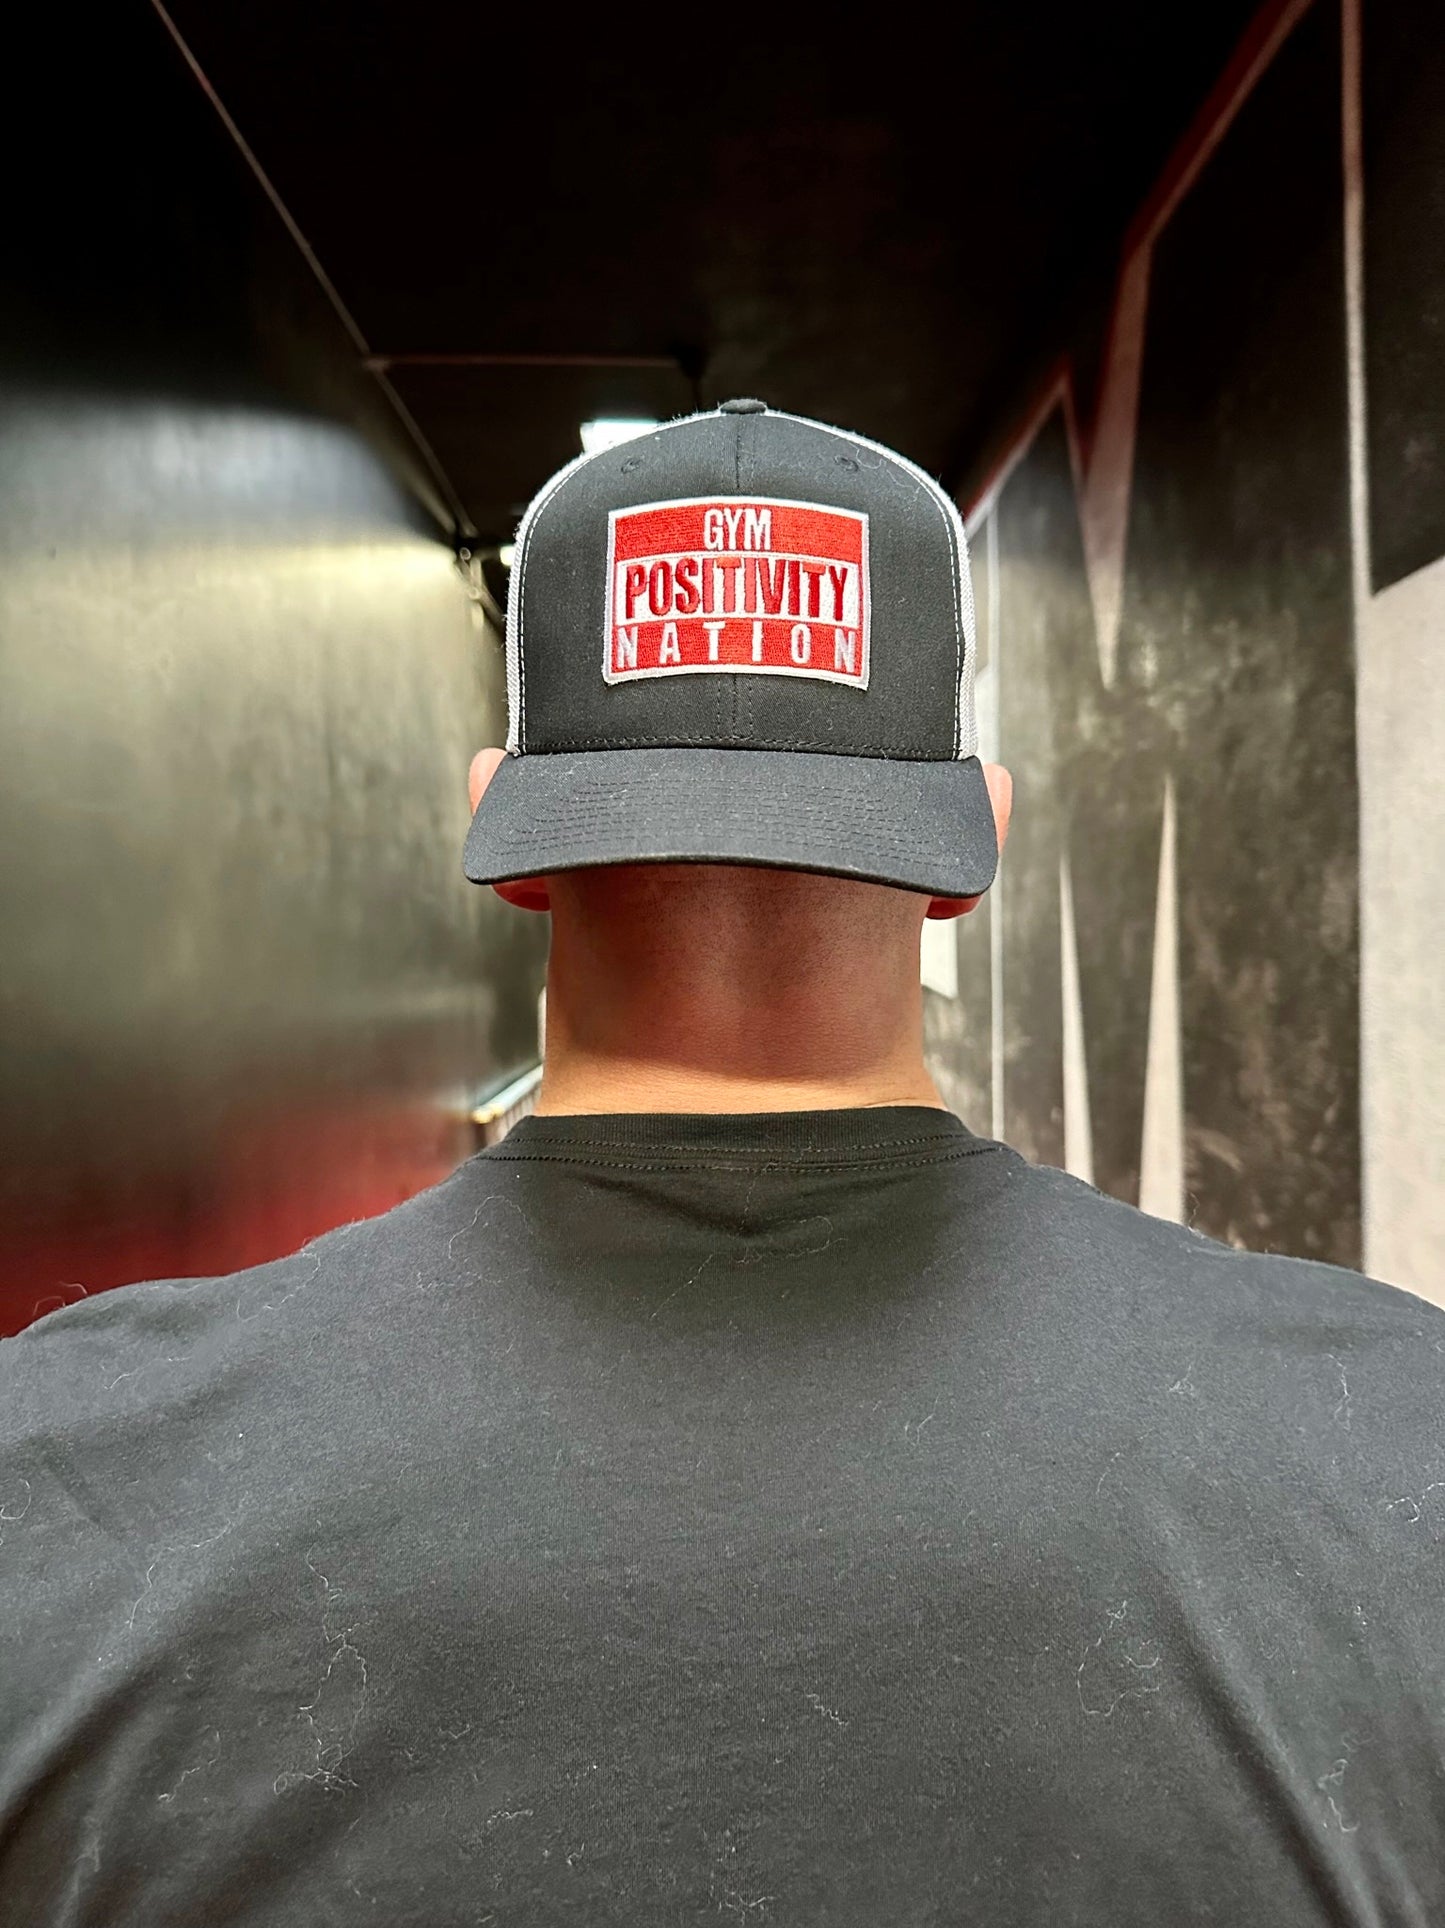 Gym Positivity Nation Logo Hat - Black & White